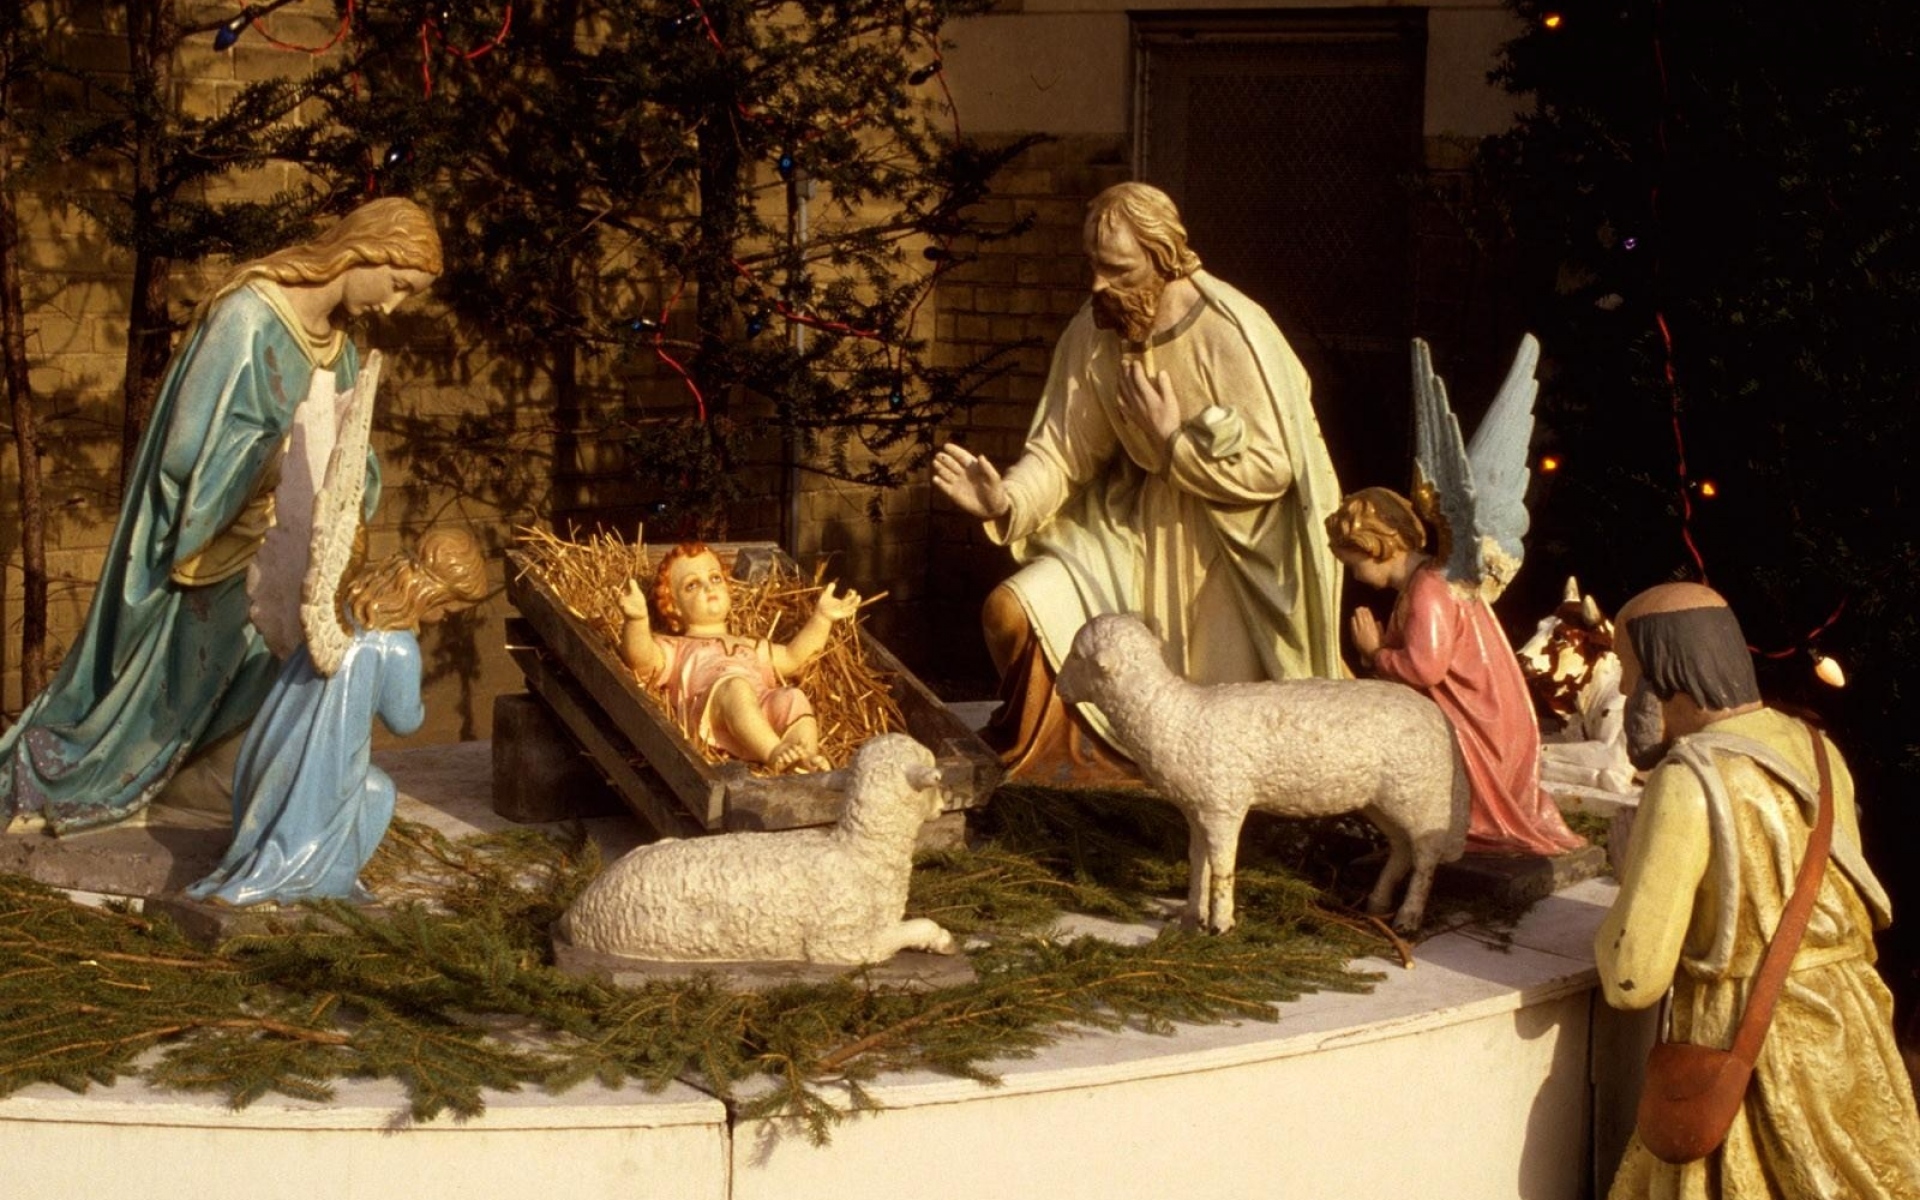 Картинки Рождество, праздник, Иисус, ясли, овец, игла, люди, ангелы, статуэтки фото и обои на рабочий стол